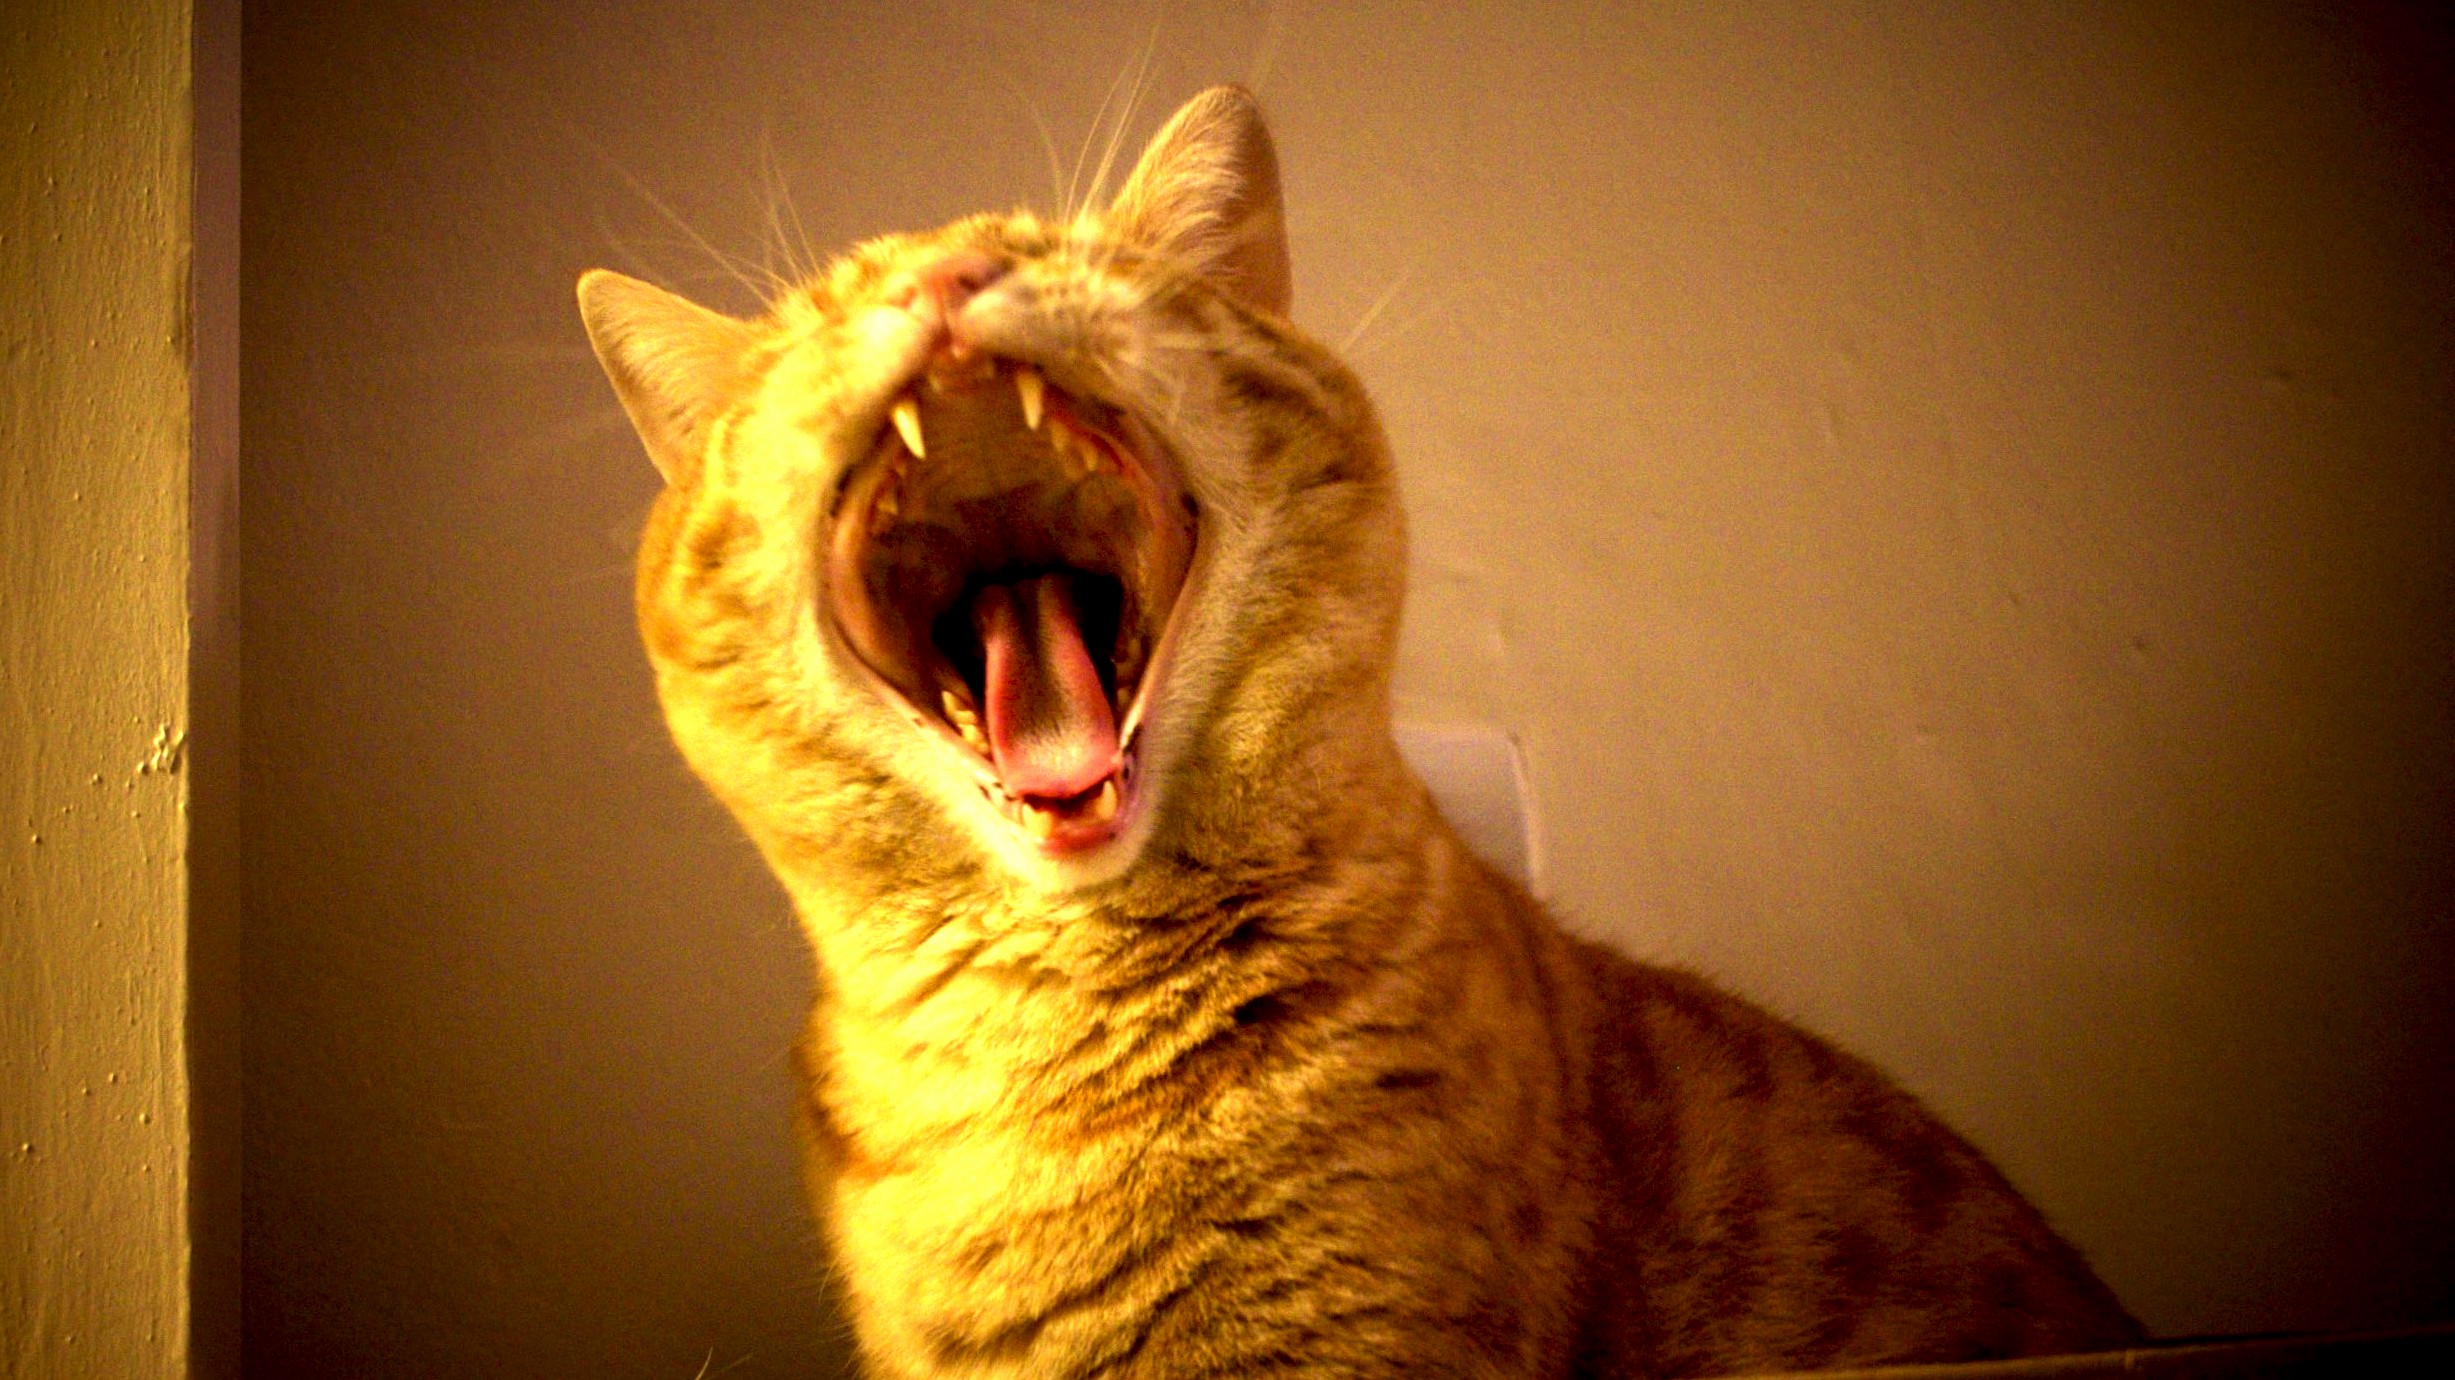 I caught him mid-yawn